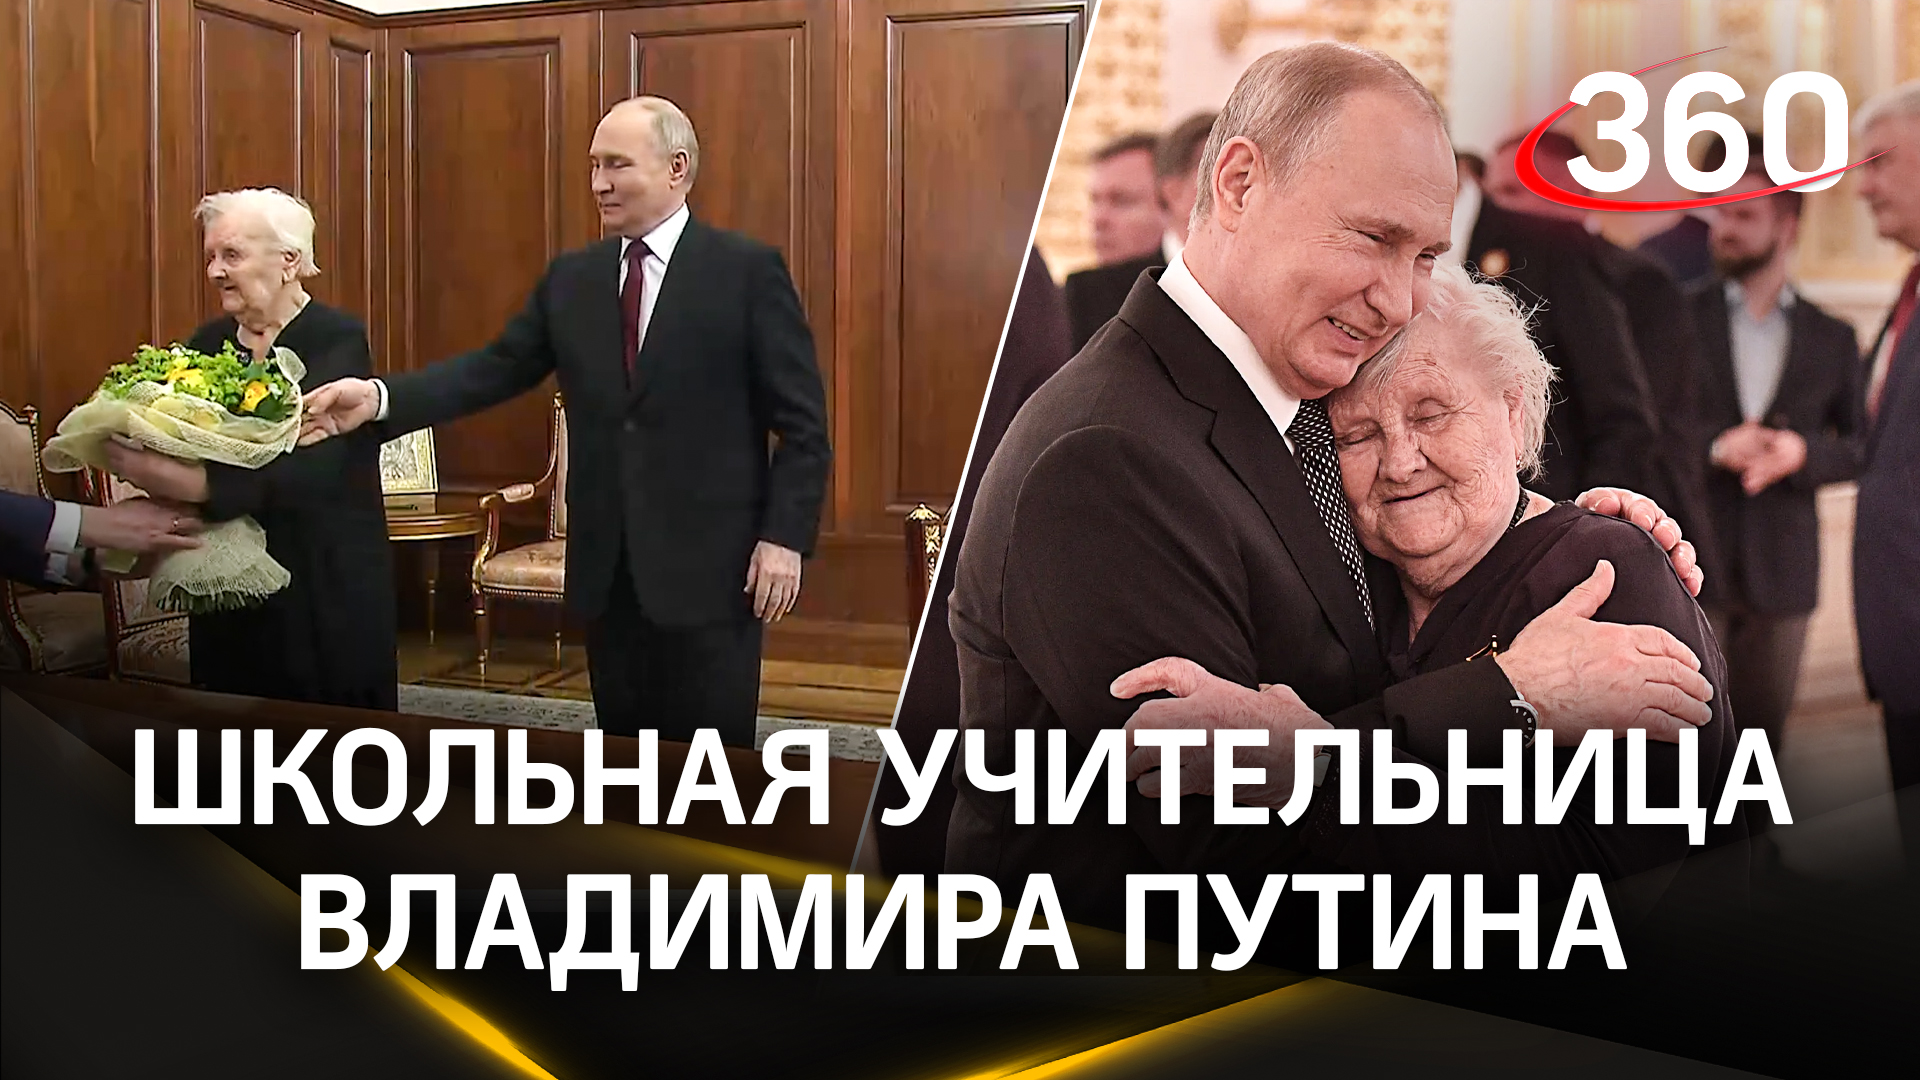 Путин первым делом после инаугурации встретился со своей классной руководительницей